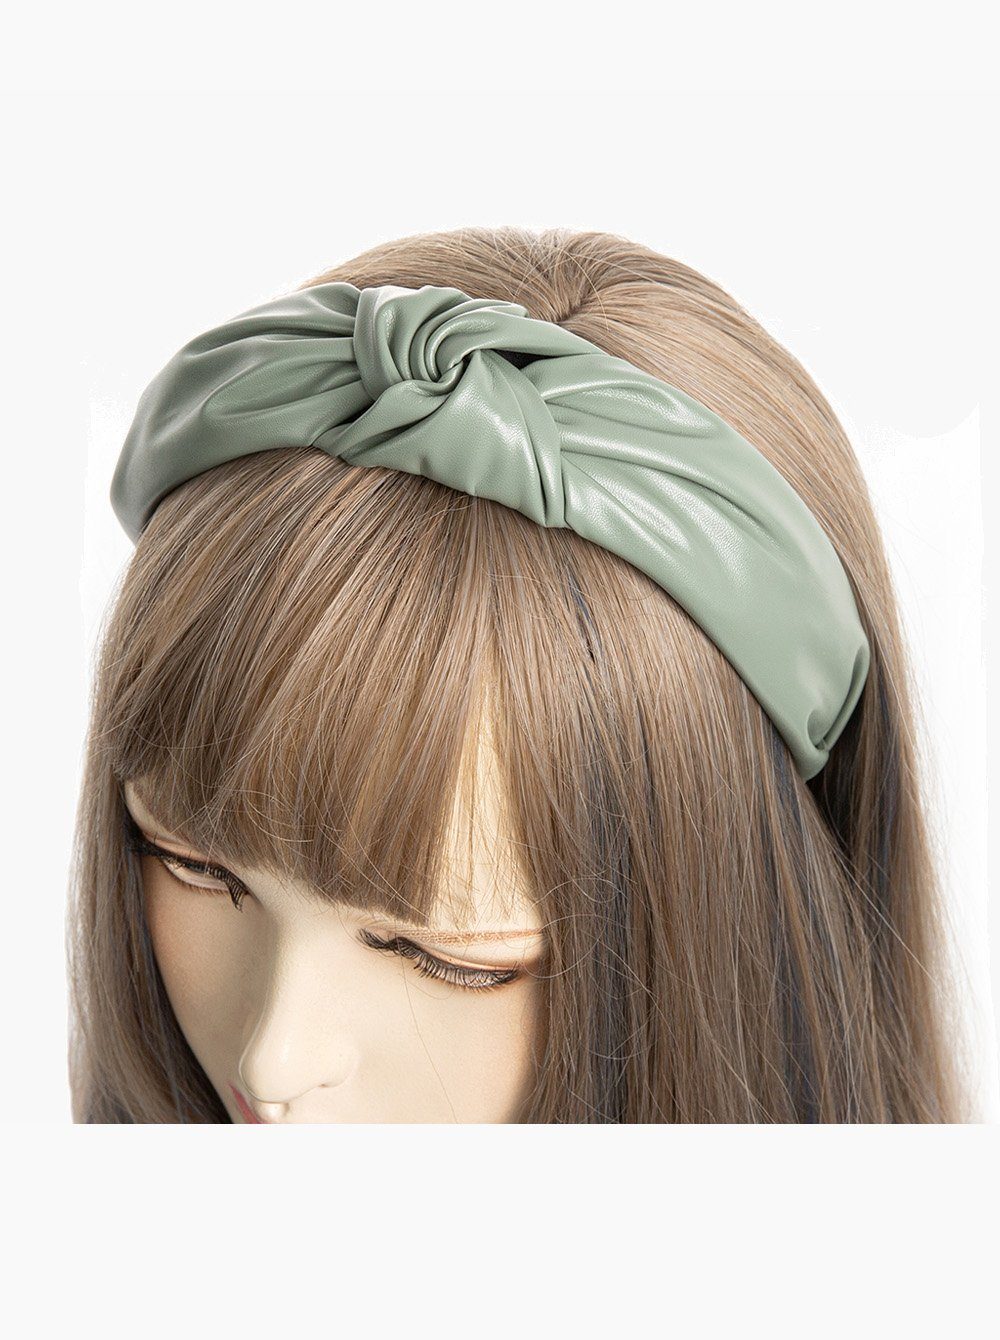 axy Haarreif Haarreif mit Knoten in Kunstleder Optik, Klassische und Vintage Damen Haareifen Haarband Graugrün